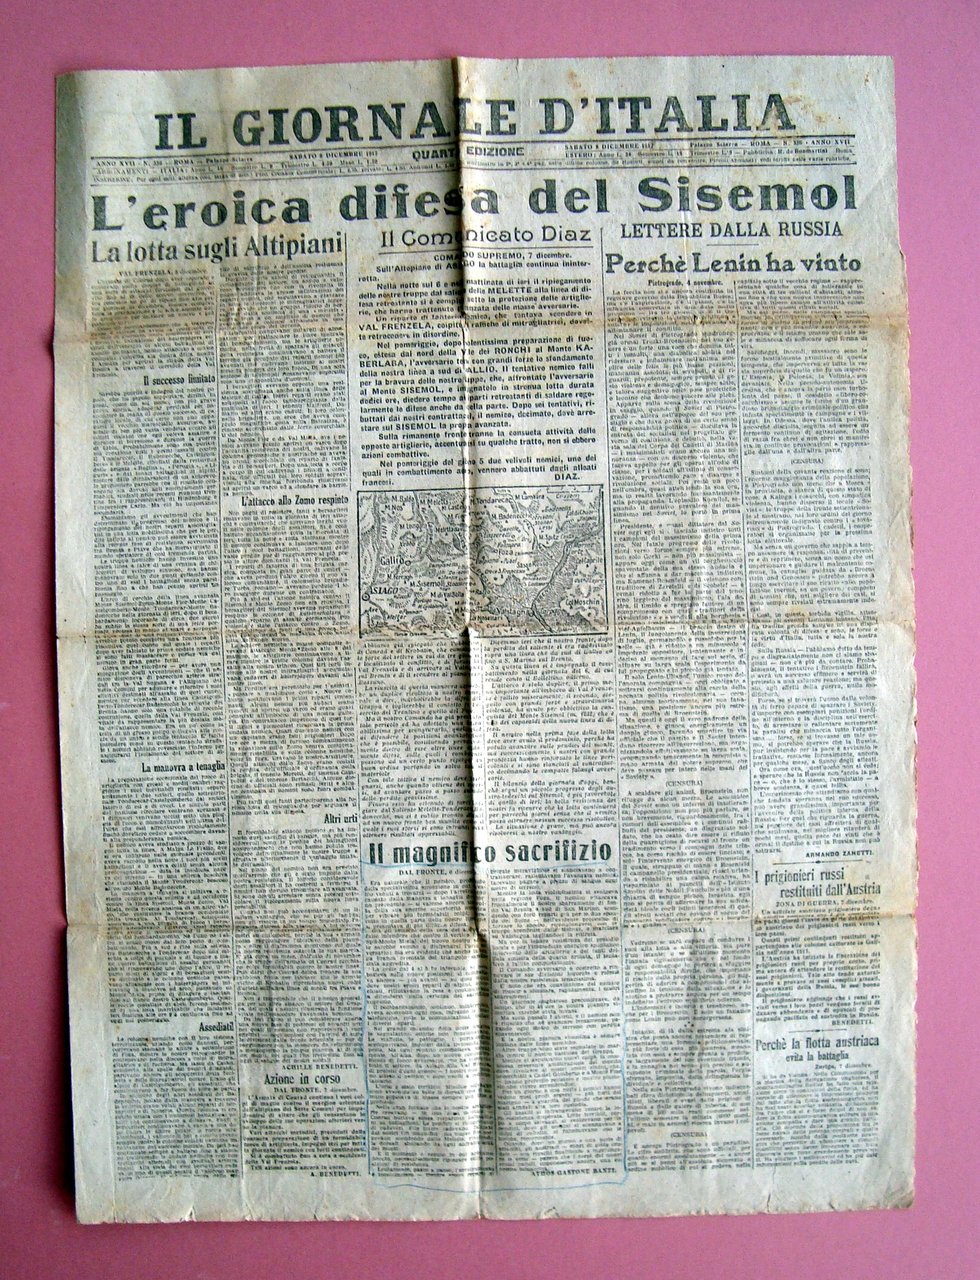 L'Eroica difesa del Sisemol Val Frenzela Il Giornale d'Italia 1917